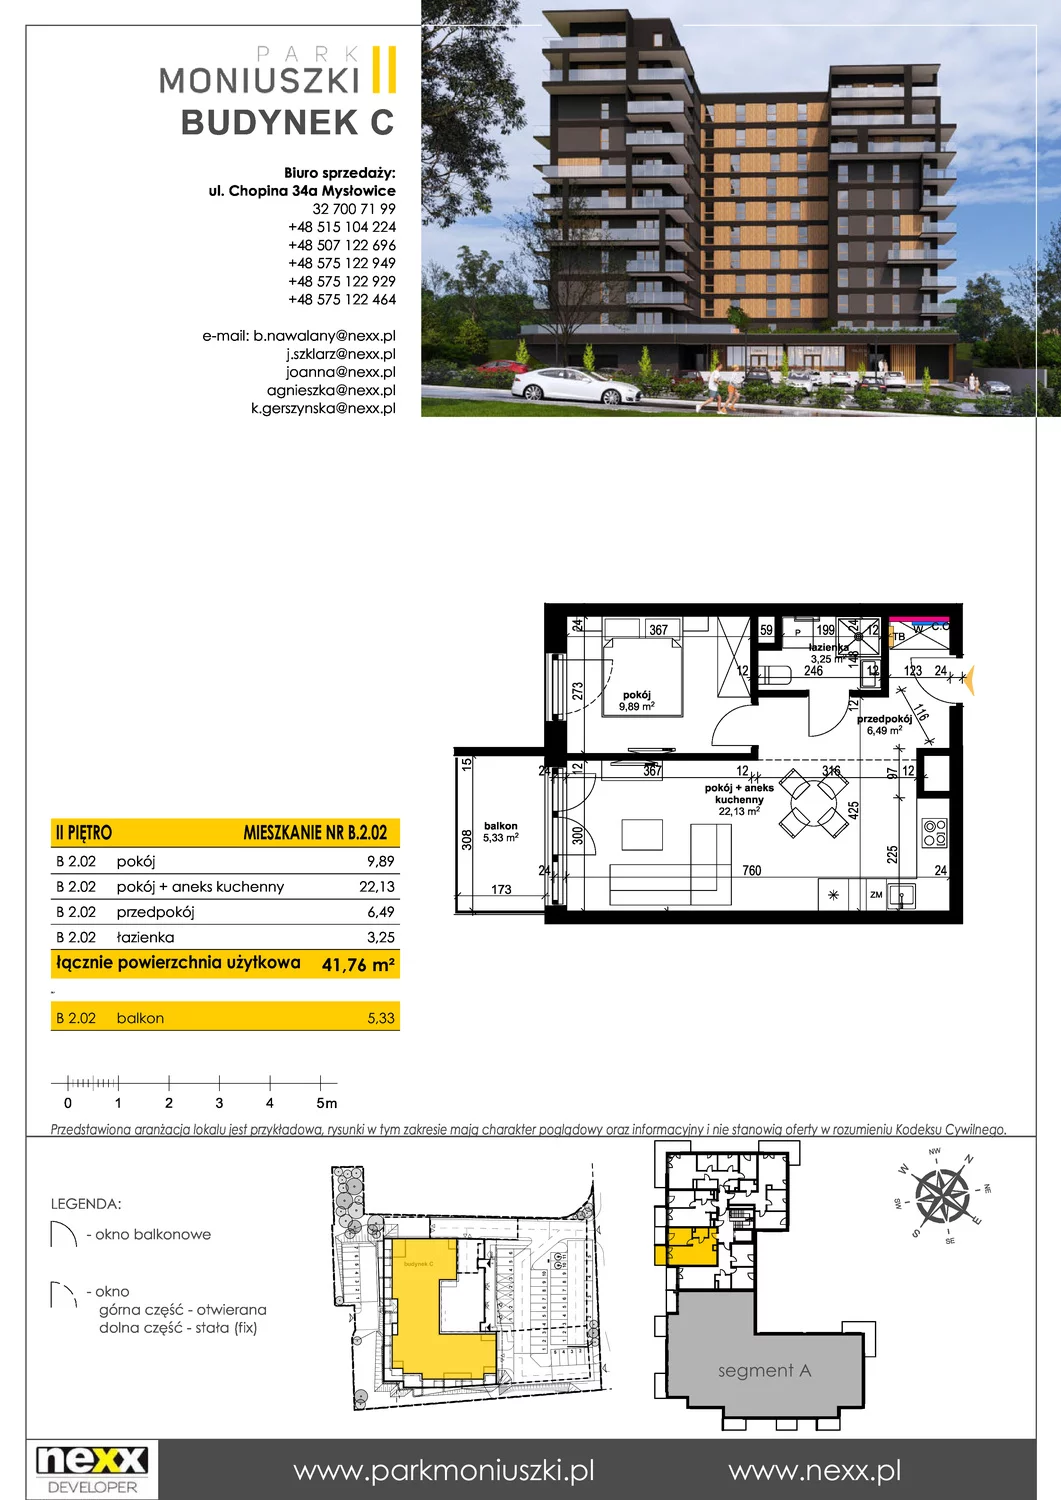 Mieszkanie 41,76 m², piętro 2, oferta nr B 2.02, Osiedle Park Moniuszki, Mysłowice, ul. Okrzei / Wielka Skotnica